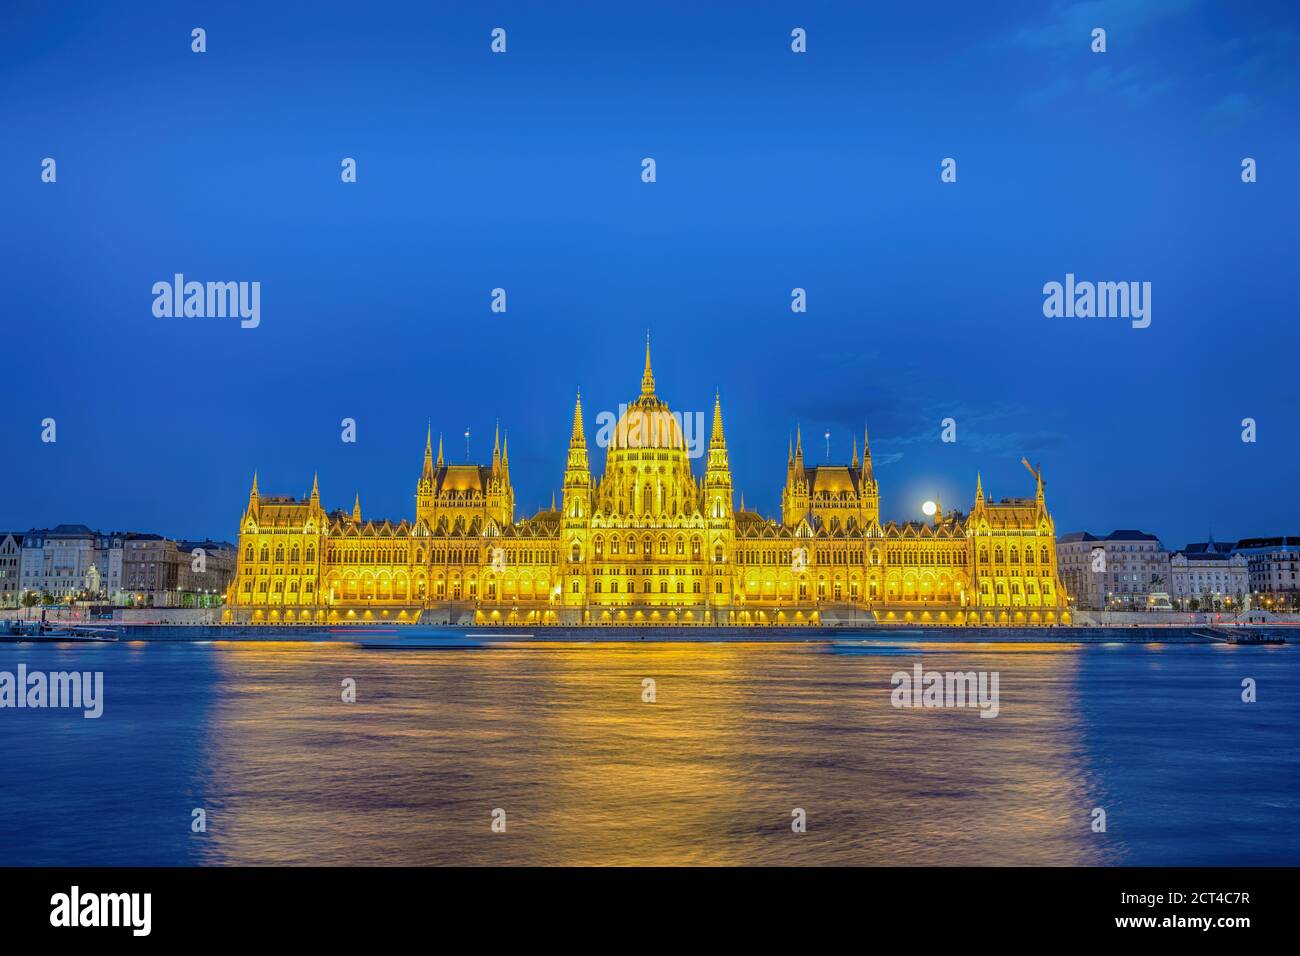 Budapest Hungría, ciudad nocturna en el horizonte del Parlamento húngaro y el río Danubio Foto de stock